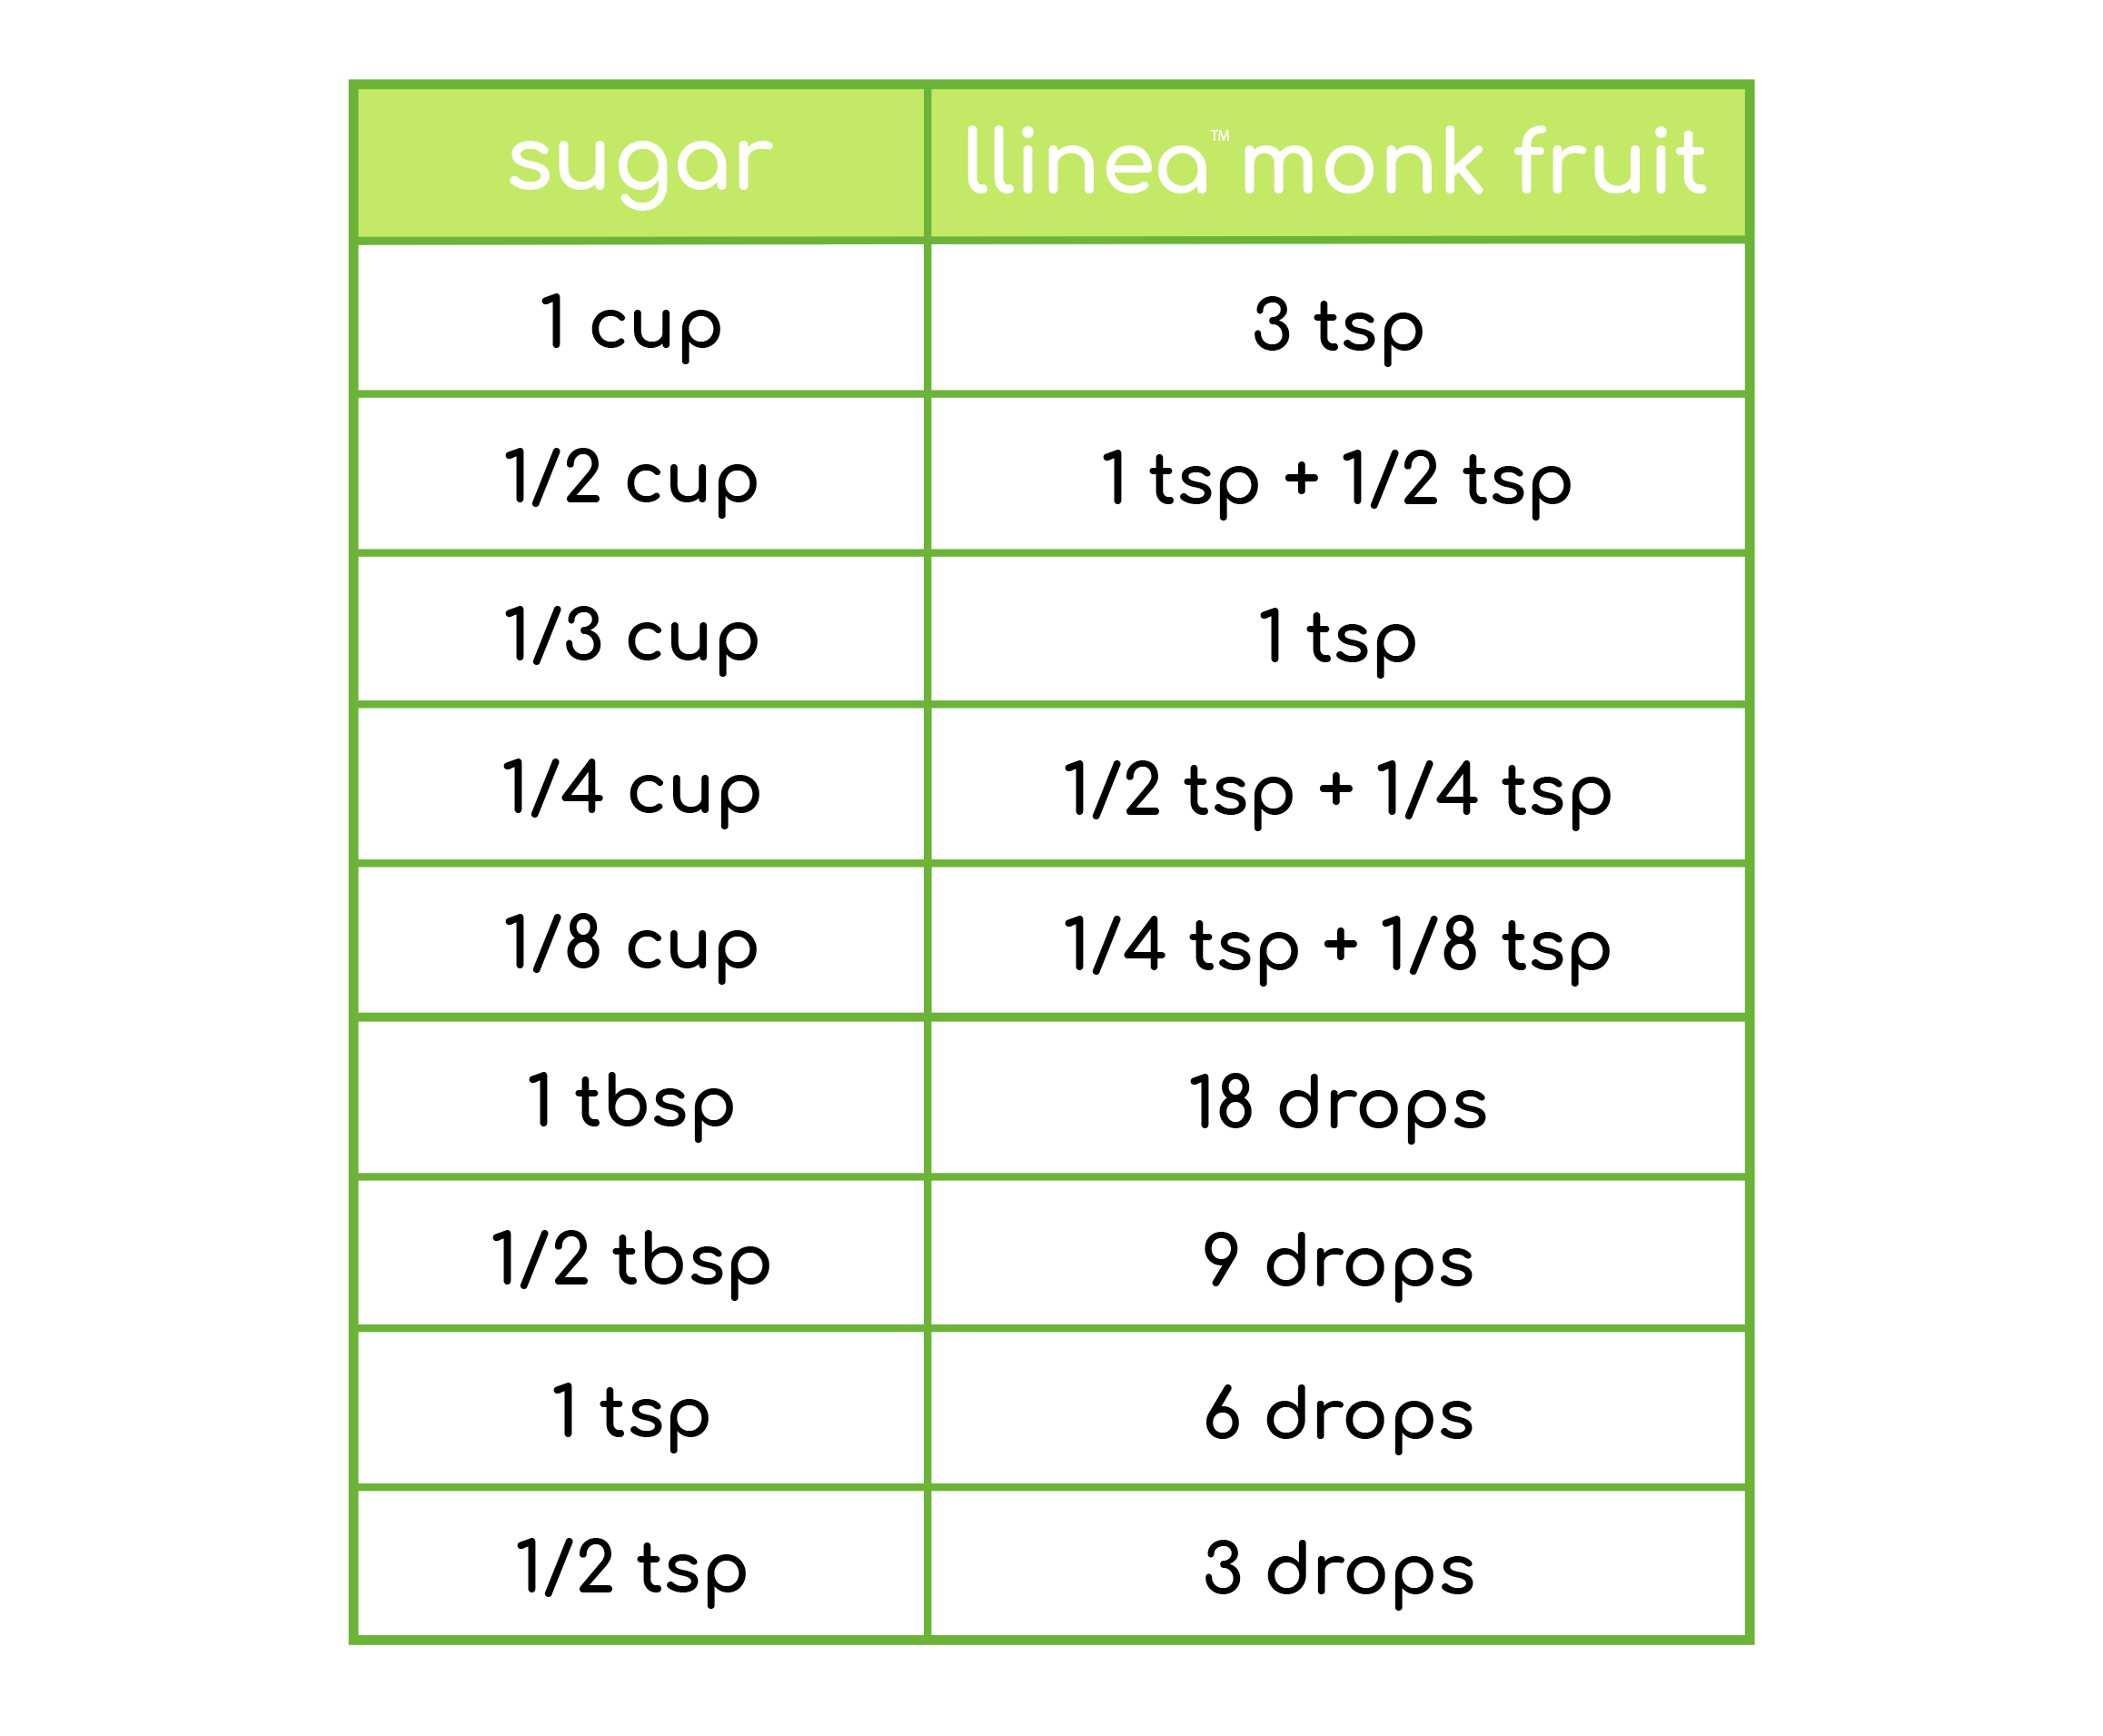 tips-for-use-llinea-monk-fruit-llinea-monk-fruit